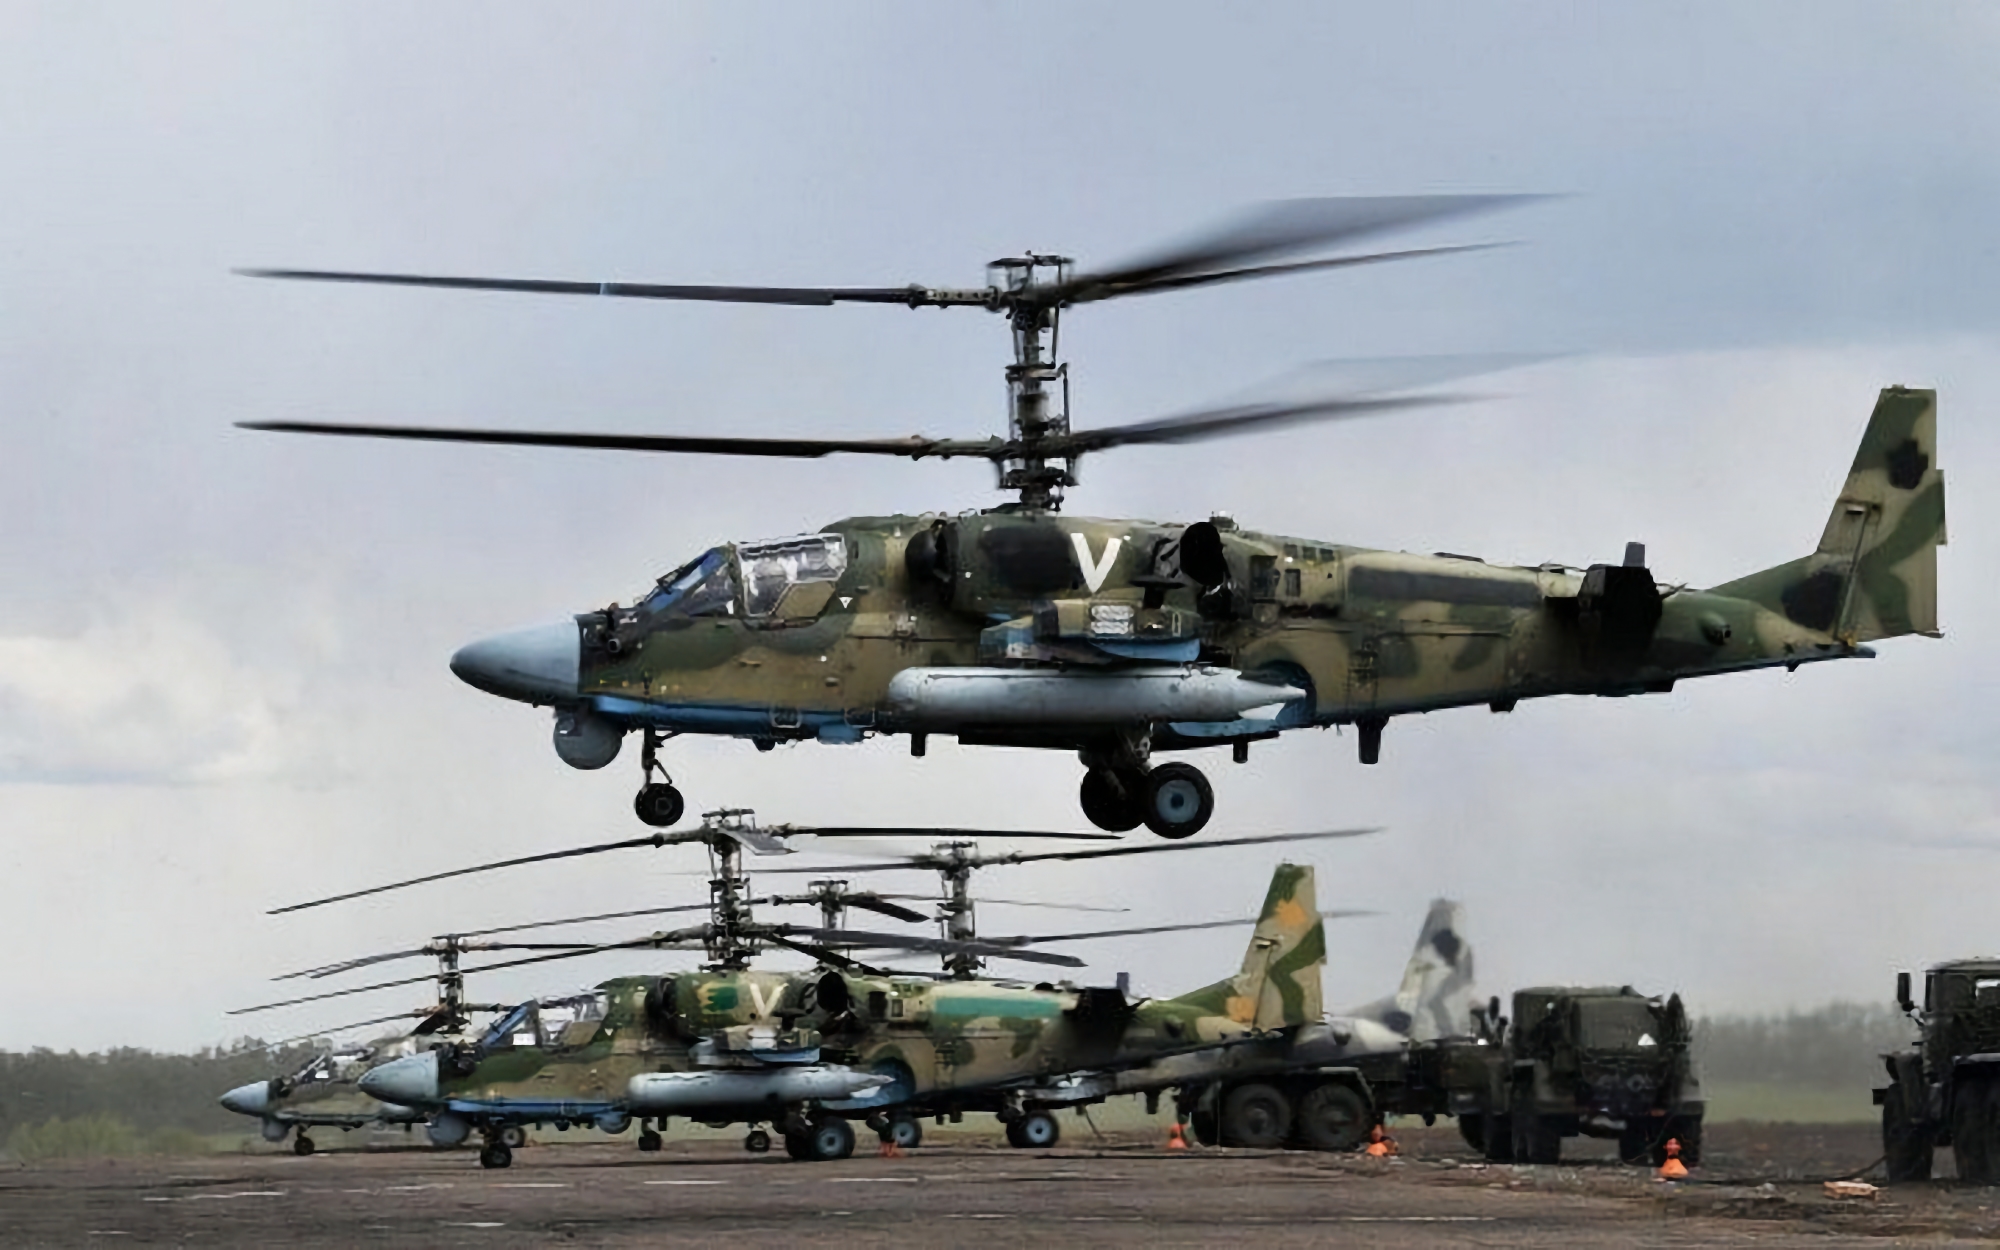 Sju helikoptrar av typen Ka-52 och två Mi-8: Oryx militära analytiker berättade hur mycket rysk utrustning AFU förstörde som ett resultat av ATACMS-angreppet på flygfält